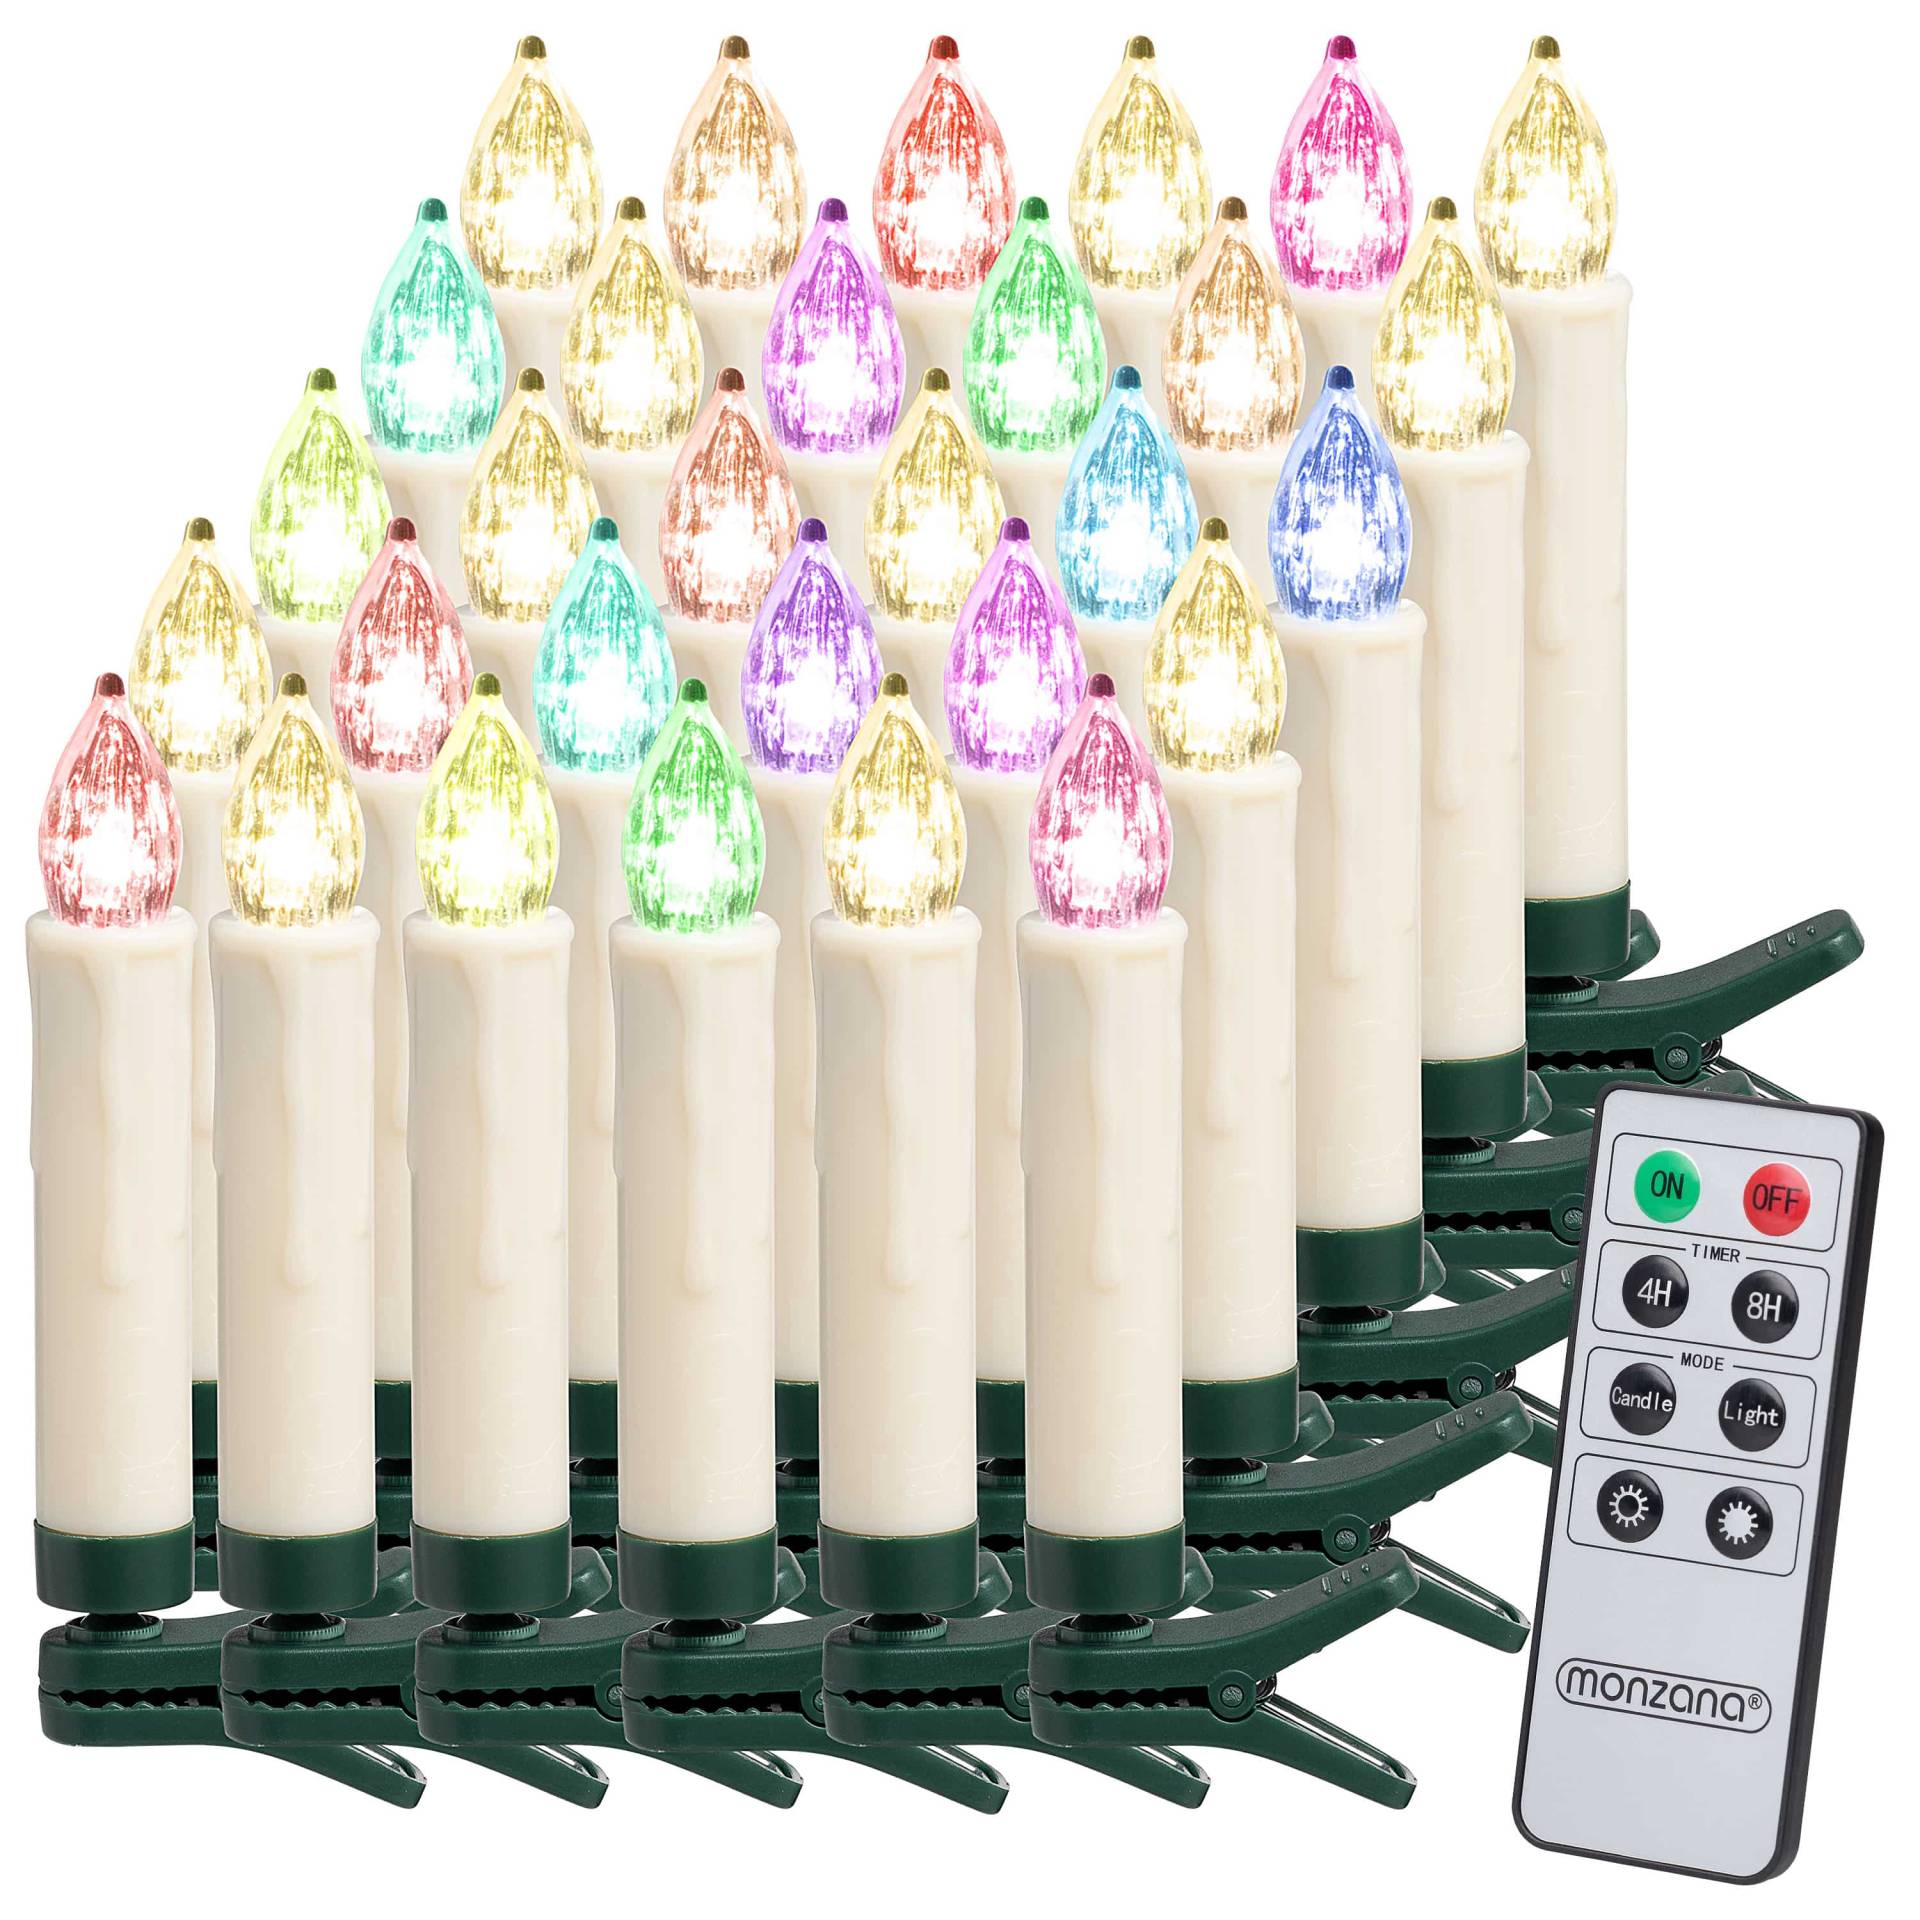 LED Weihnachtsbaumkerzen 30er-Set Mehrfarbig mit Fernbedienung von monzana®